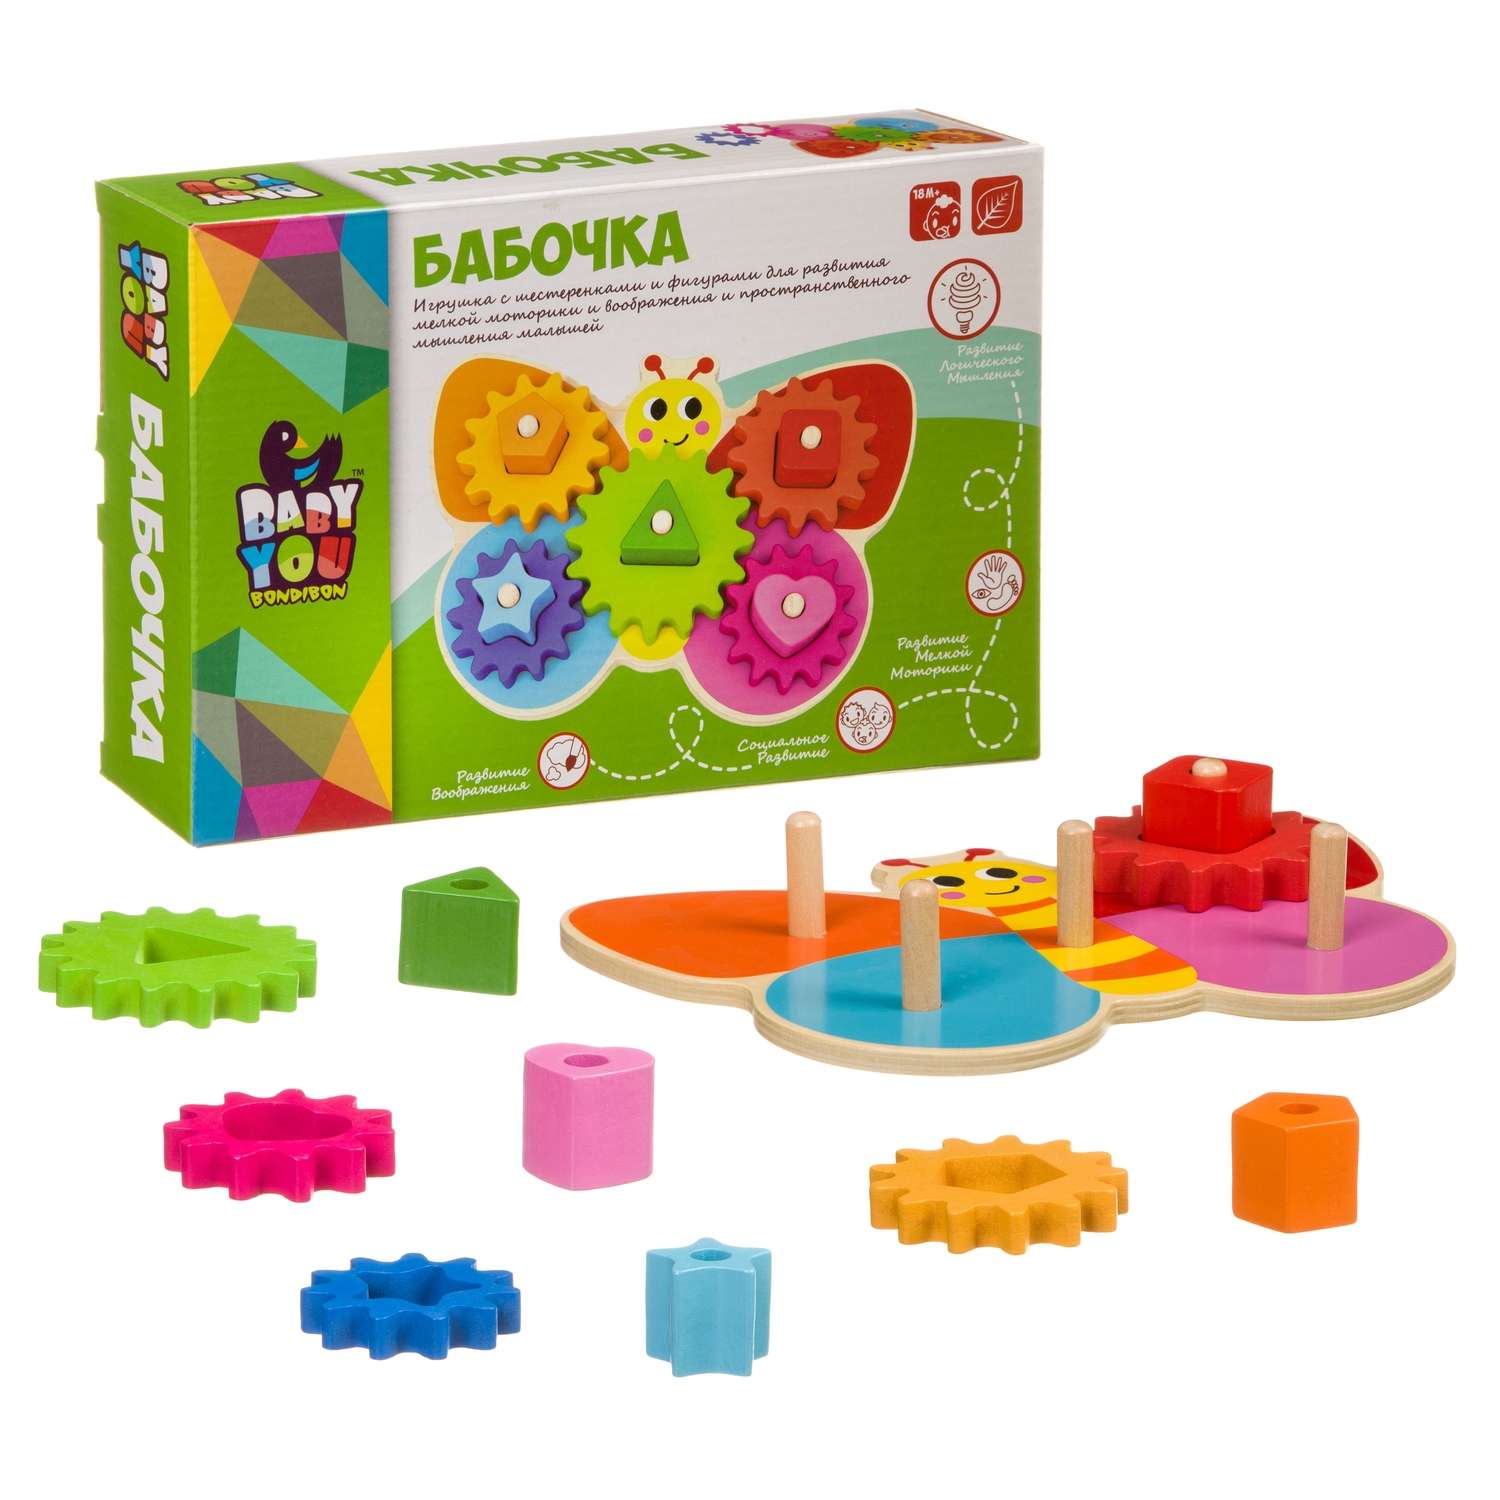 Развивающая игрушка BONDIBON Бабочка с шестеренками и фигурами серия Baby You - фото 5